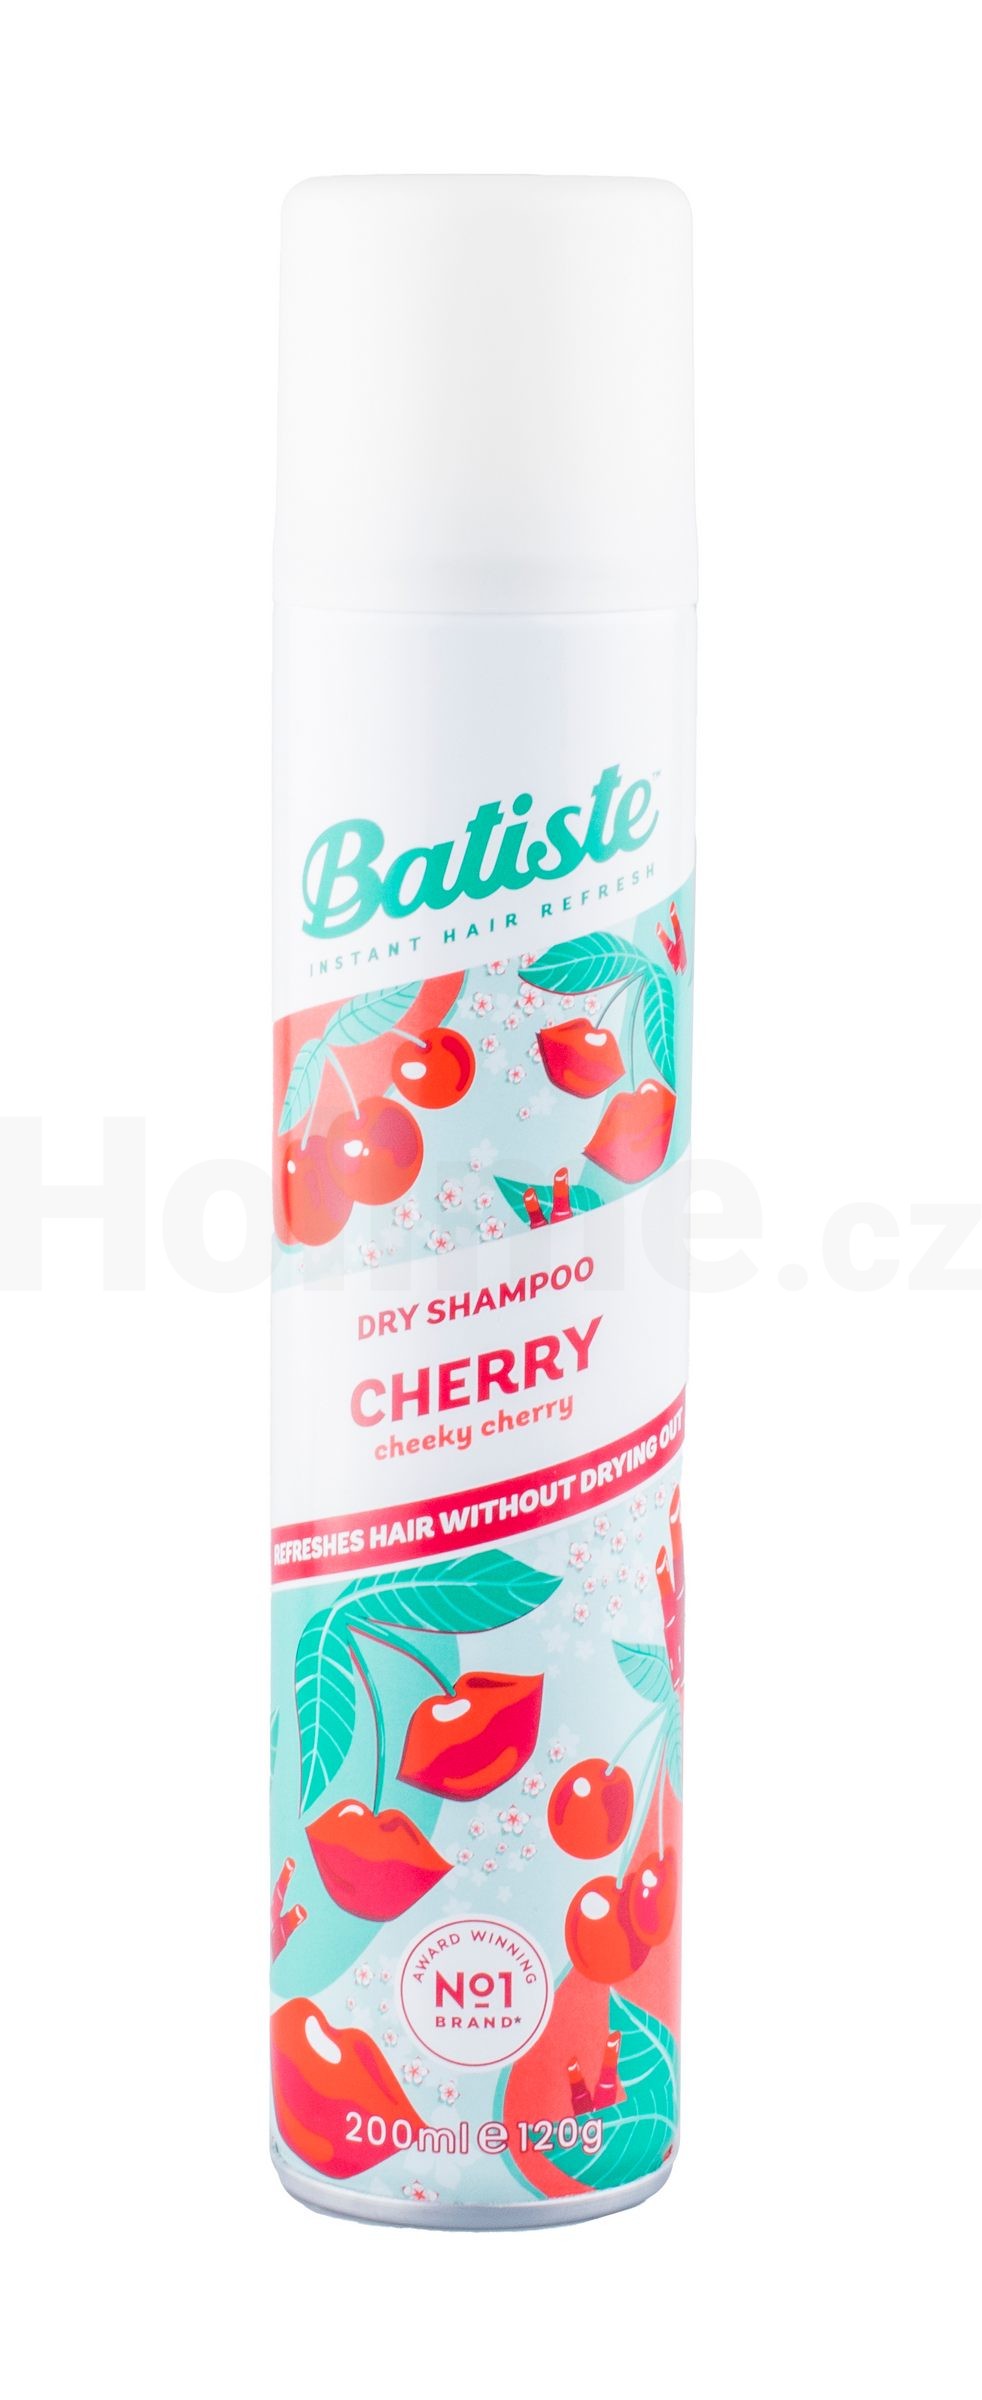 Batiste Cherry suchý šampon 200 ml